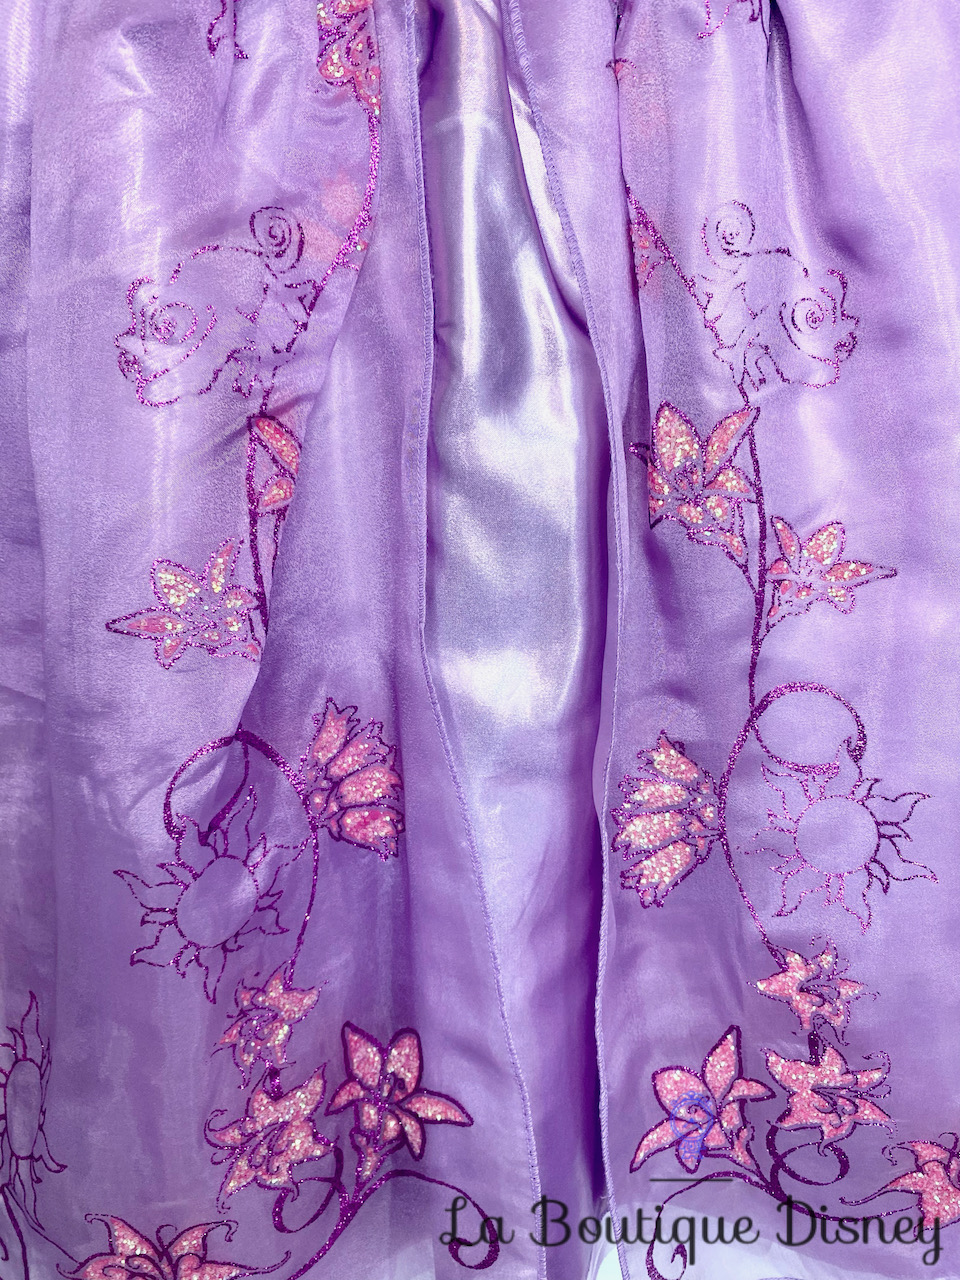 déguisement-raiponce-disney-store-taille-5-6-ans-robe-princesse-violet-paillettes-voile-rose-4